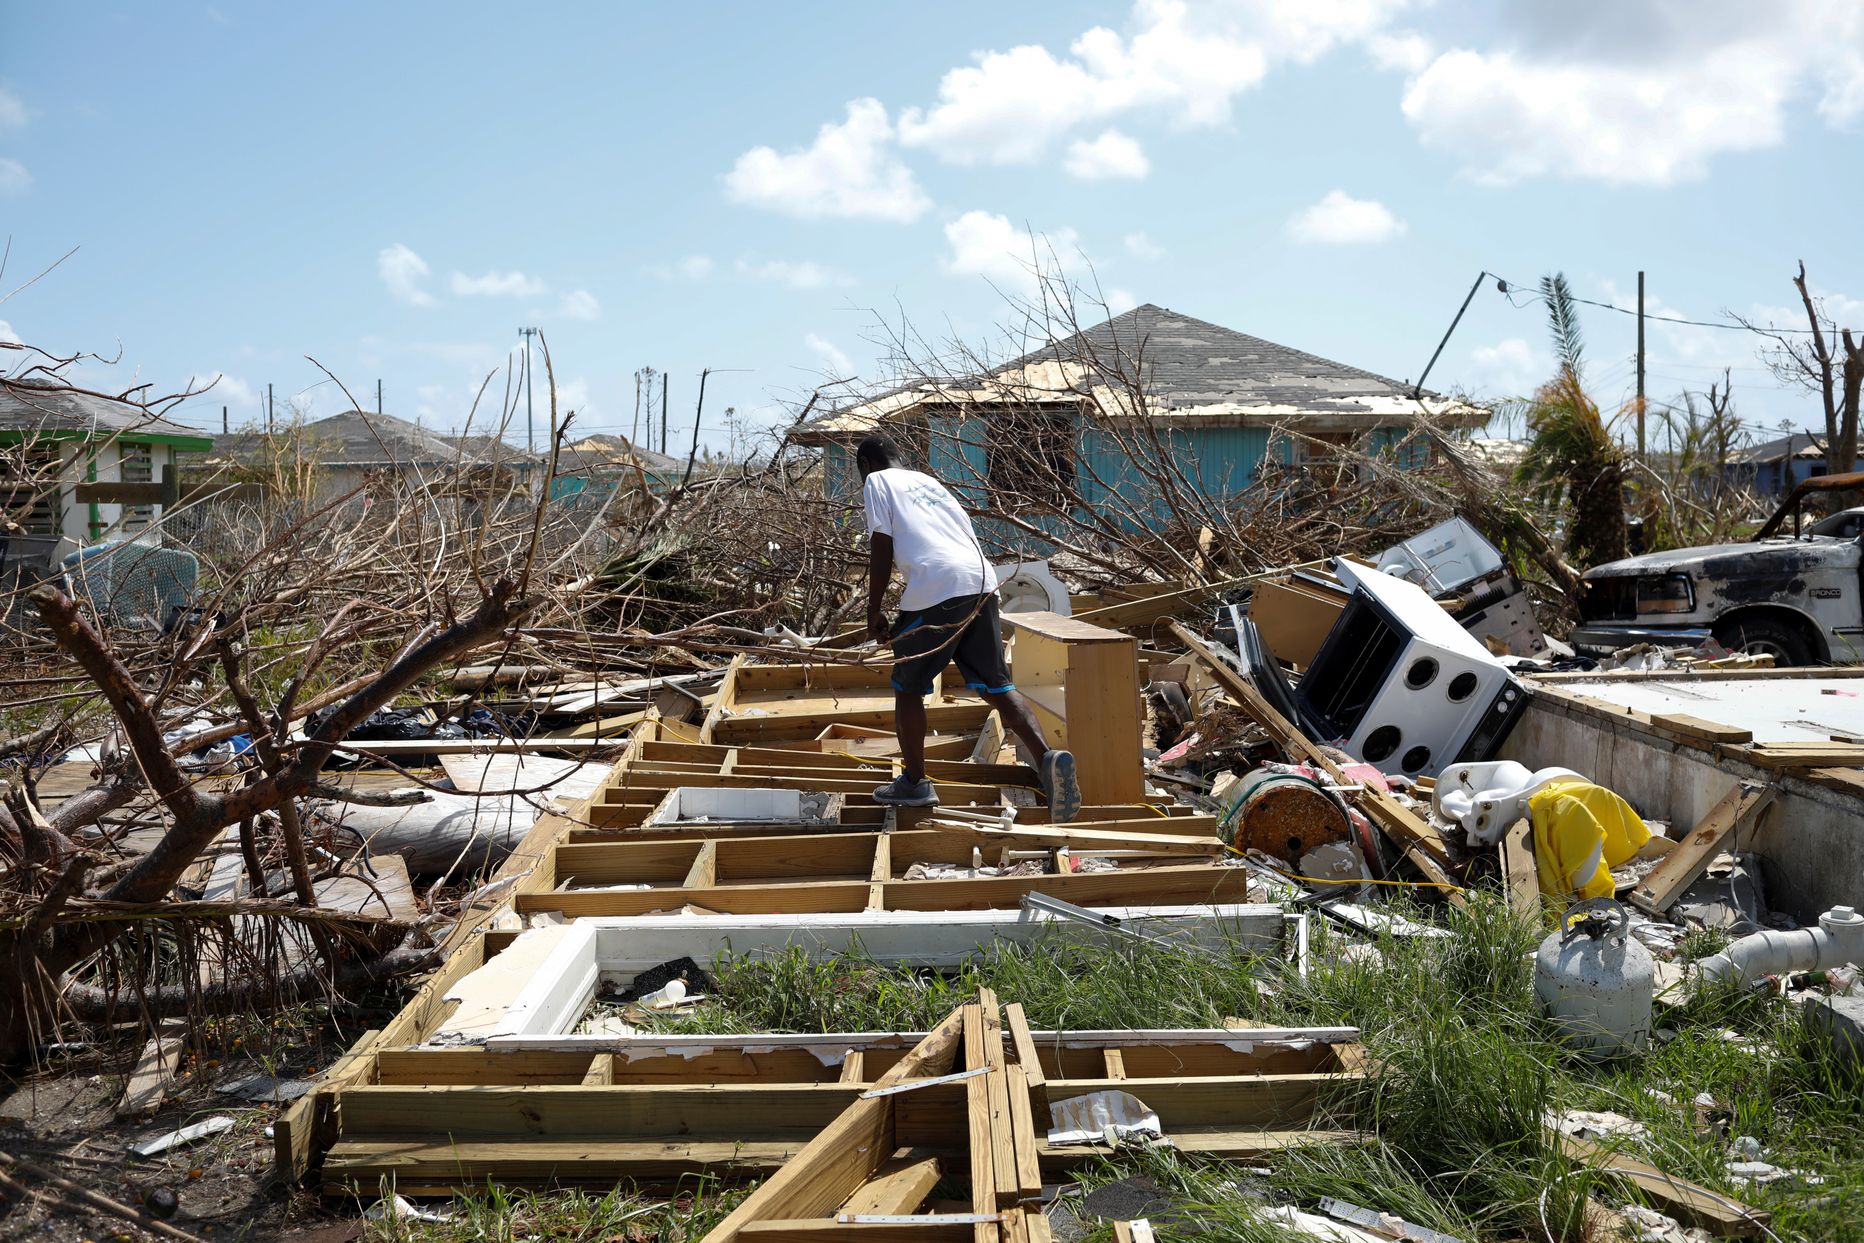 Bahamal on orkaani Dorian järel kadunud pea 2500 inimest, teatasid kolmapäeval võimuesindajad.